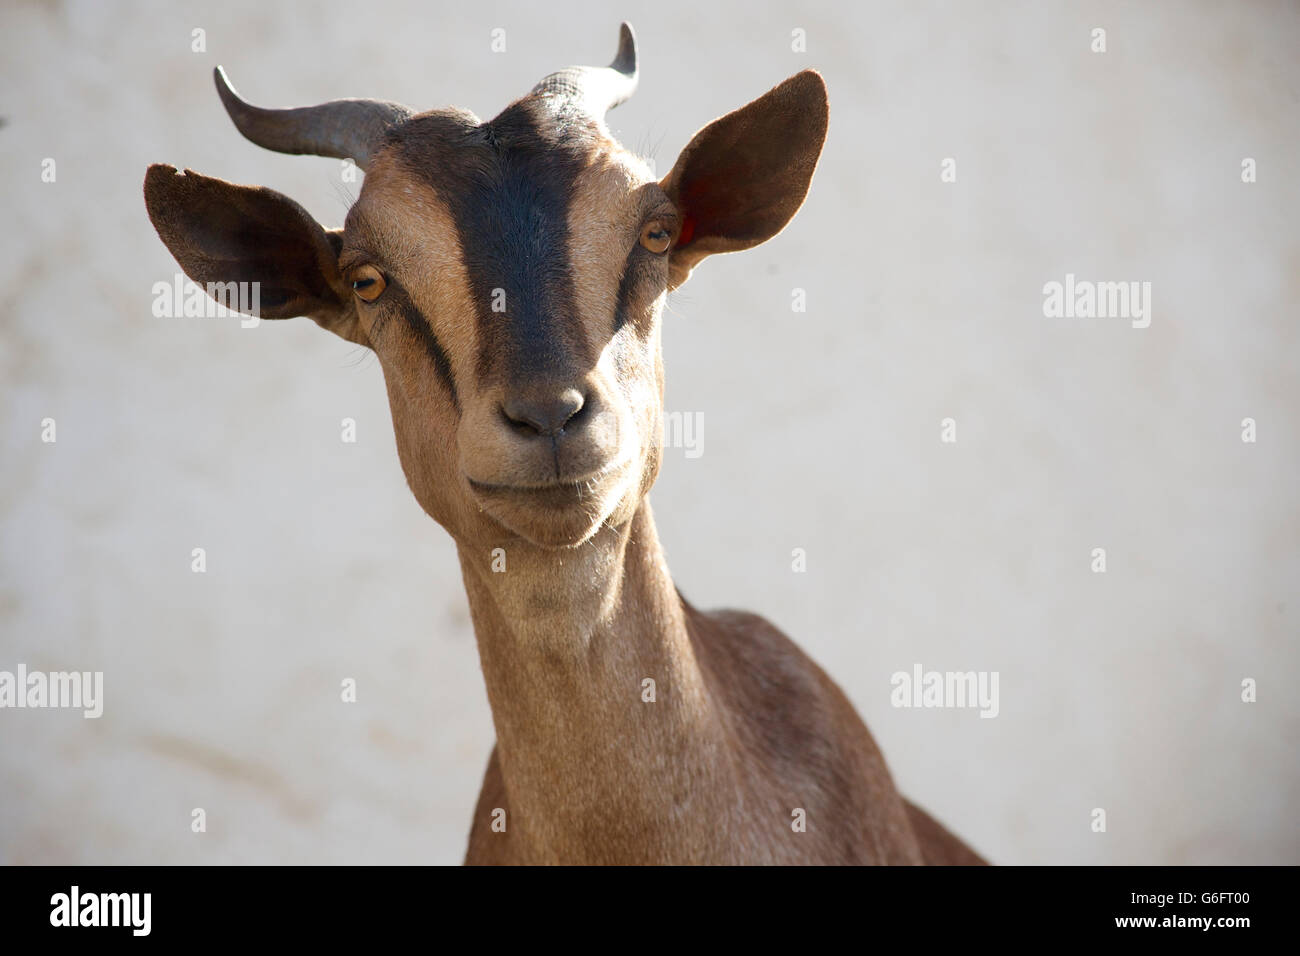 Cabra mirando a la cámara. Etiopía ojillos. Foto de stock